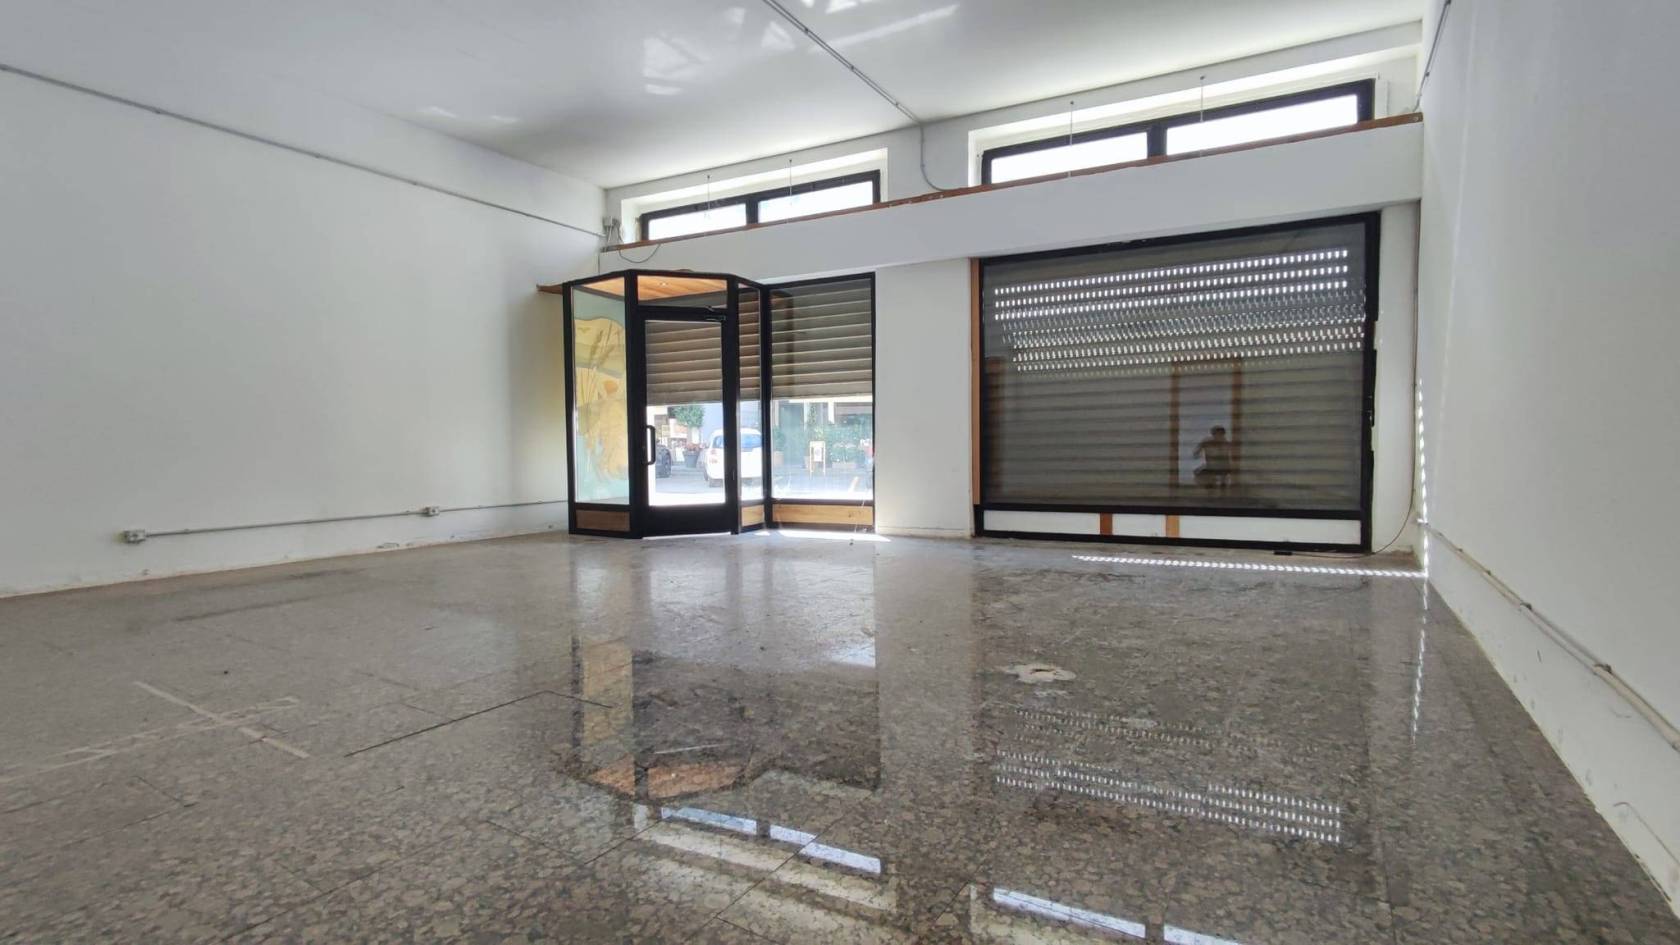 Monza, Zona S. Biagio, affittasi ampio negozio con due vetrine, locali retro-negozio, laboratorio collegato internamente e avente accesso 